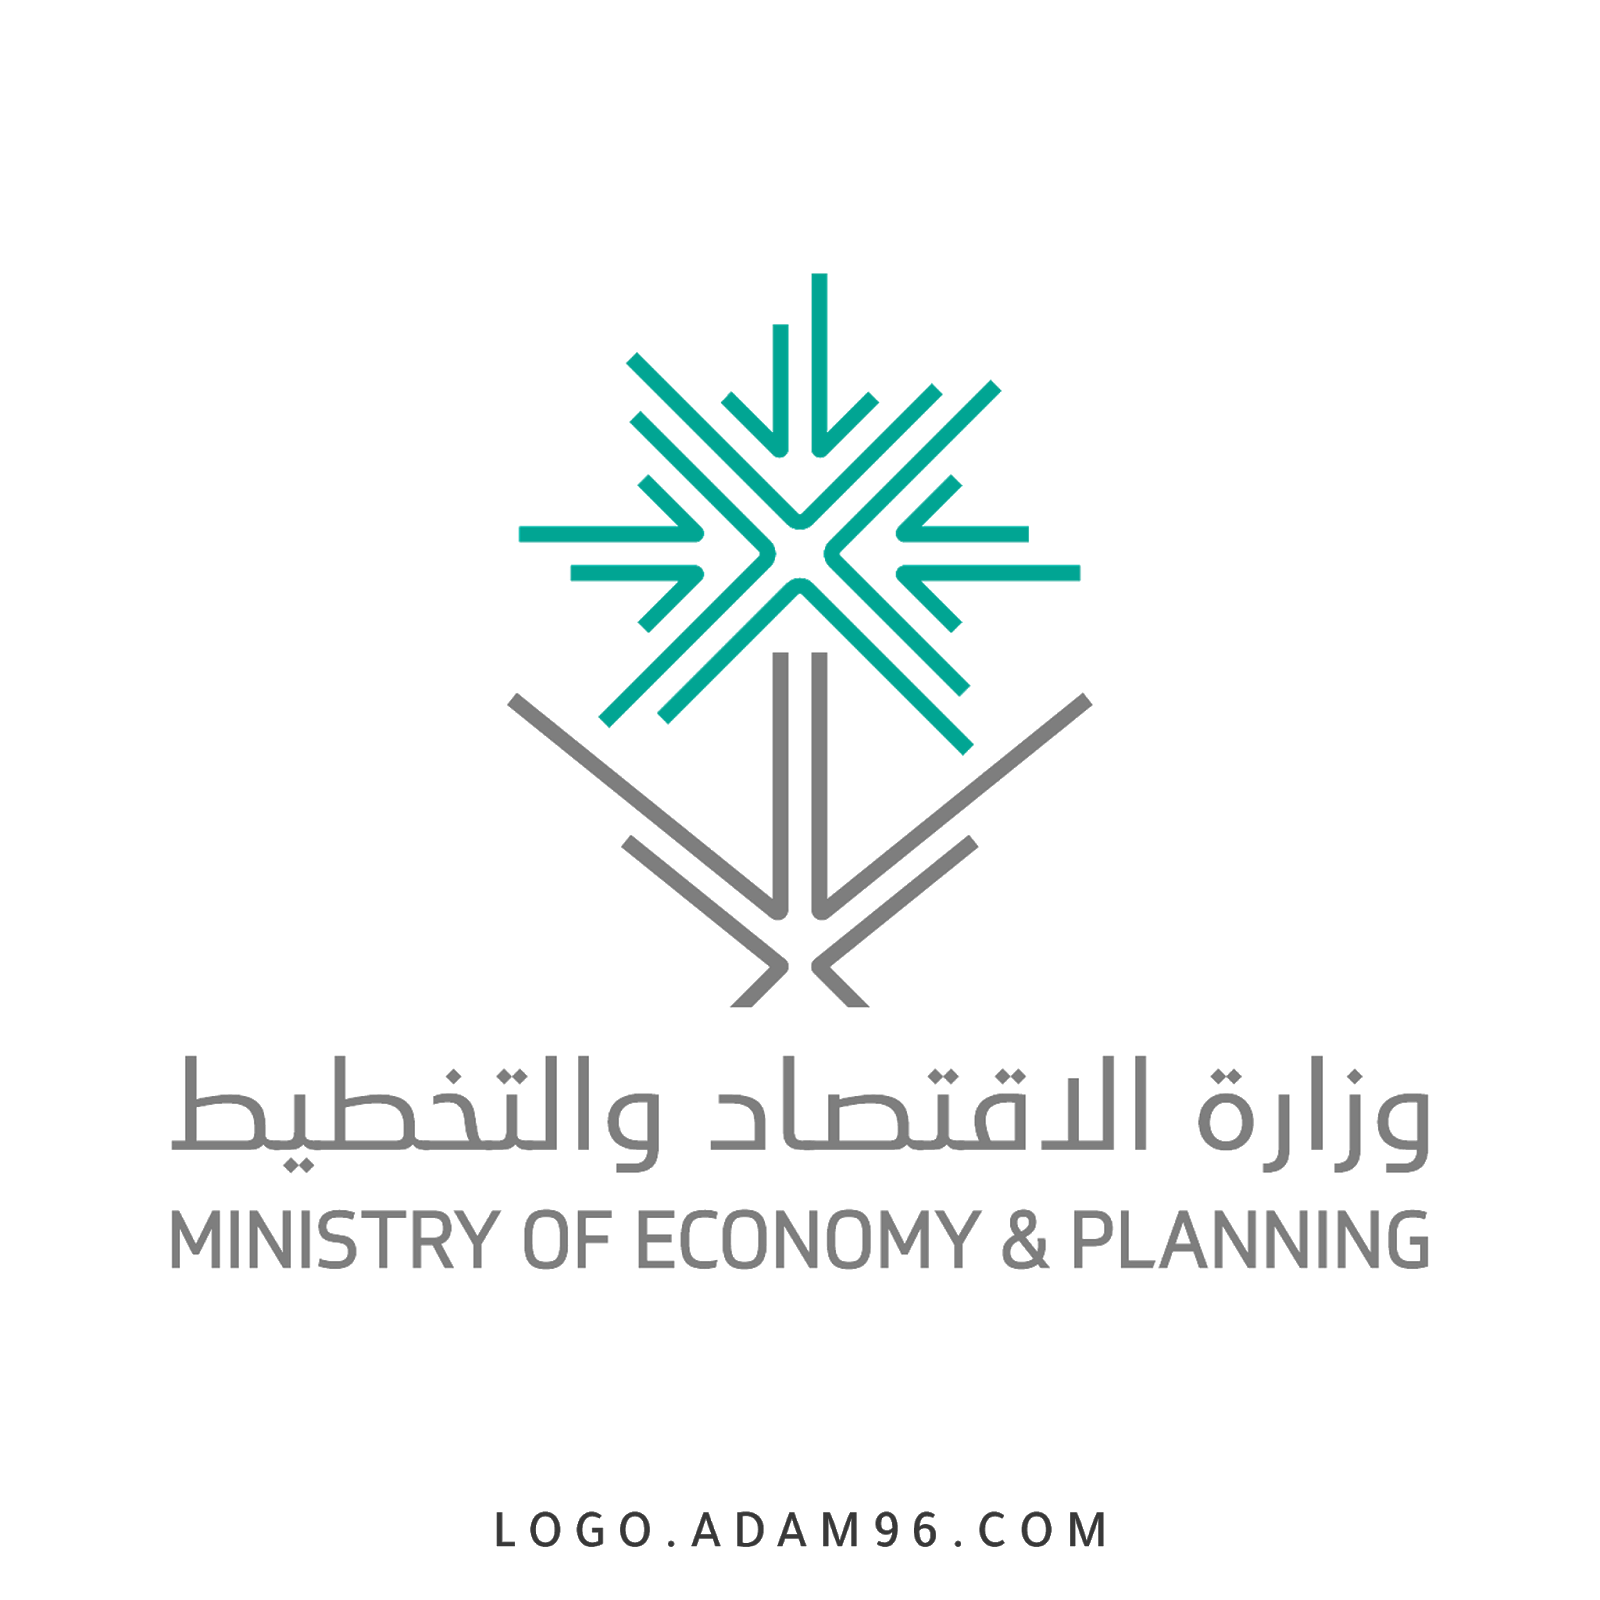 وزارة الاقتصاد والتخطيط السعودية بعدد من التخصصات للرجال والنساء بالرياض - وظائف وزارة الاقتصاد والتخطيط السعودية بعدد من التخصصات للرجال والنساء بالرياض